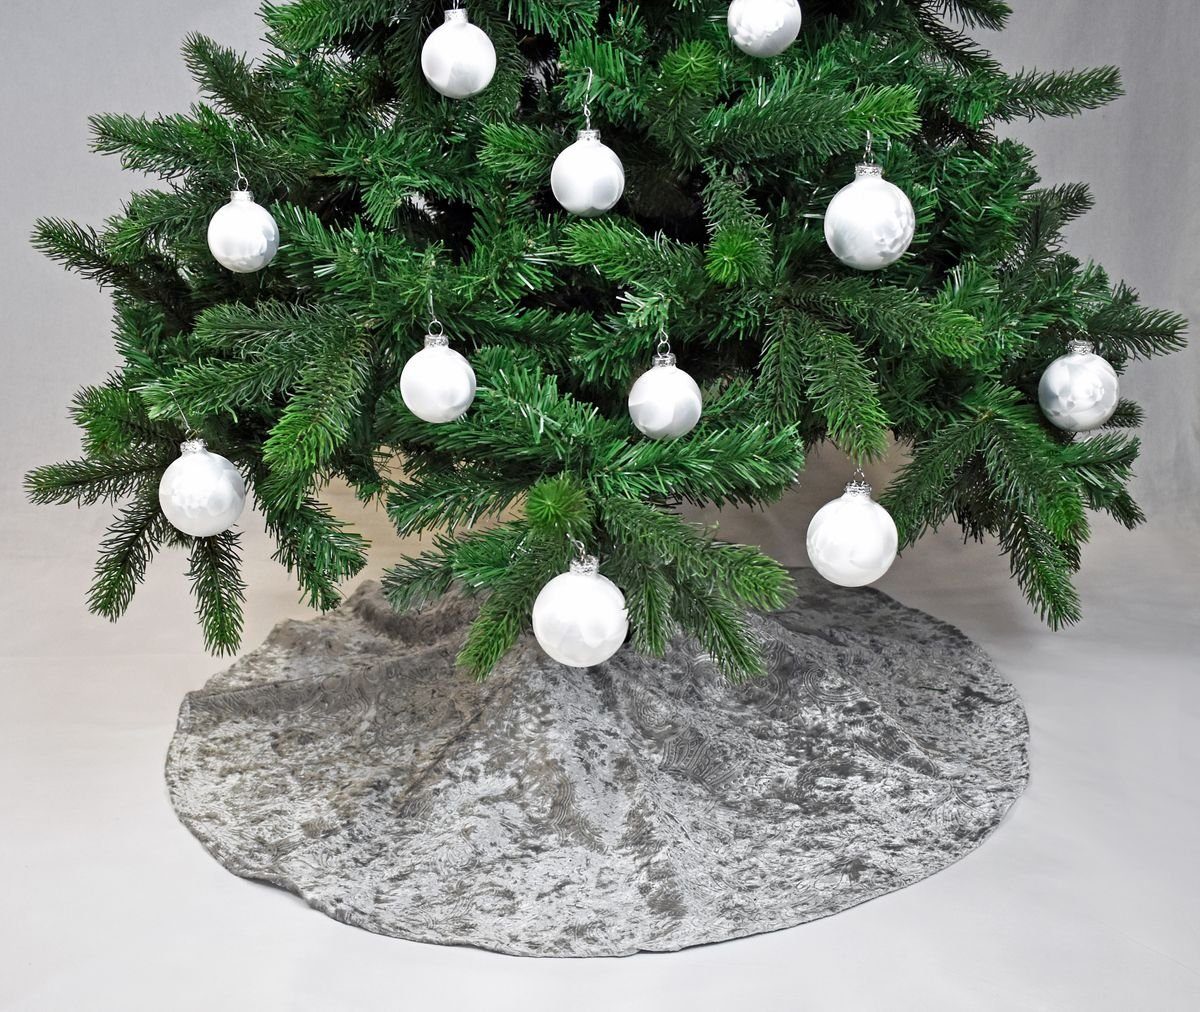 JACK Weihnachtsbaumdecke Kuschlige Ornamente Christbaumdecke Silber Weihnachtsbaumdecke Rund Ø Tannenbaumdecke Baumteppich Unterlage Tannenbaum, Decke / 120cm Weihnachtsbaum